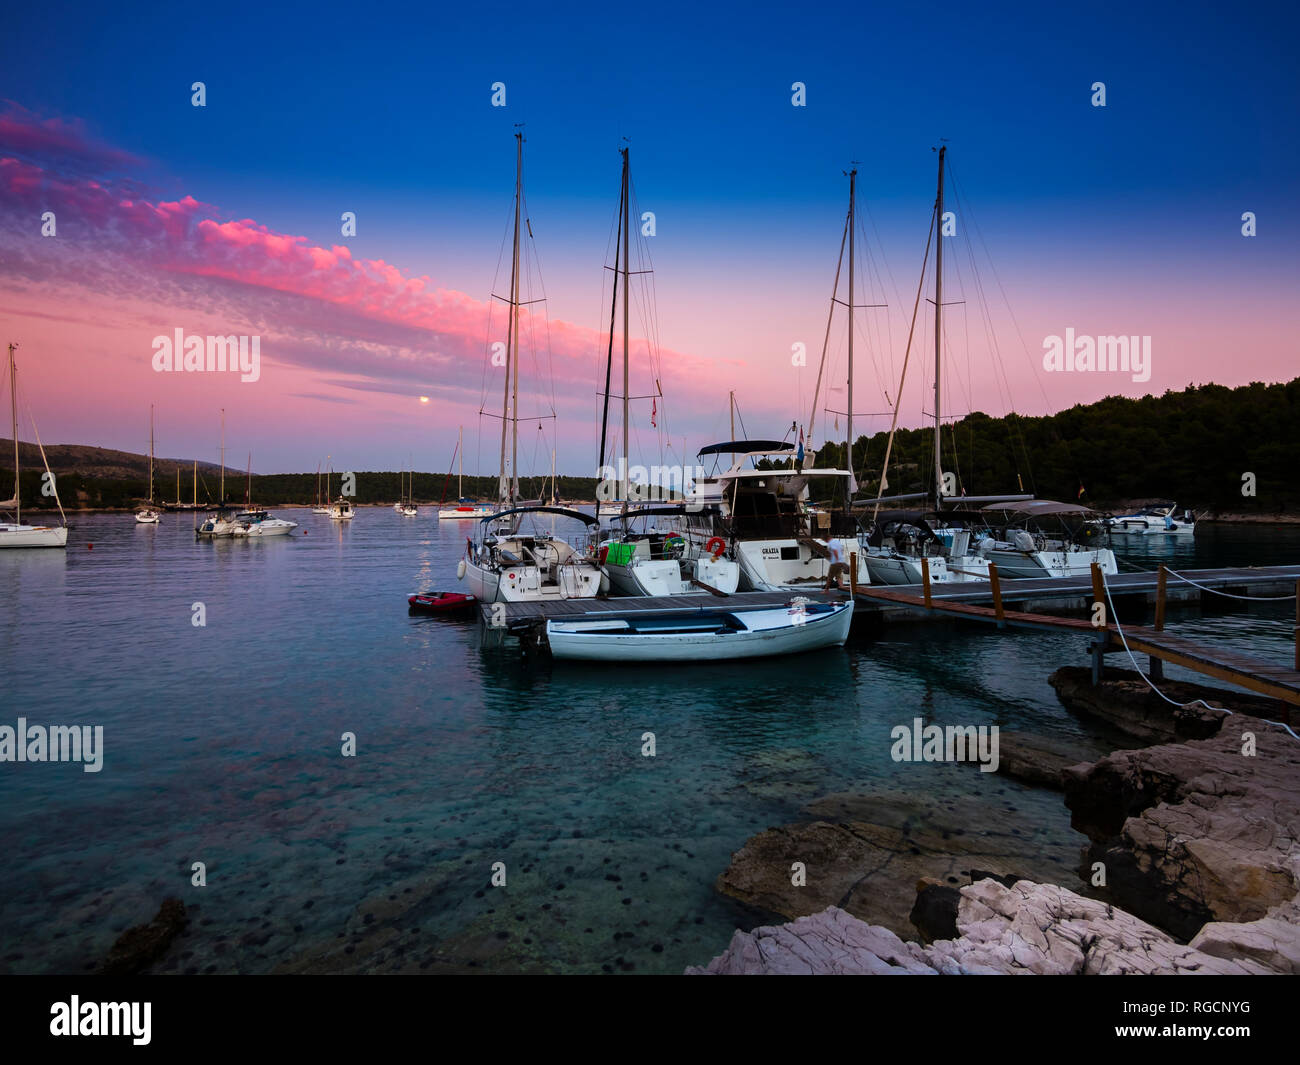 Croatia, Damlatia, Brac Island, marina at dusk Stock Photo